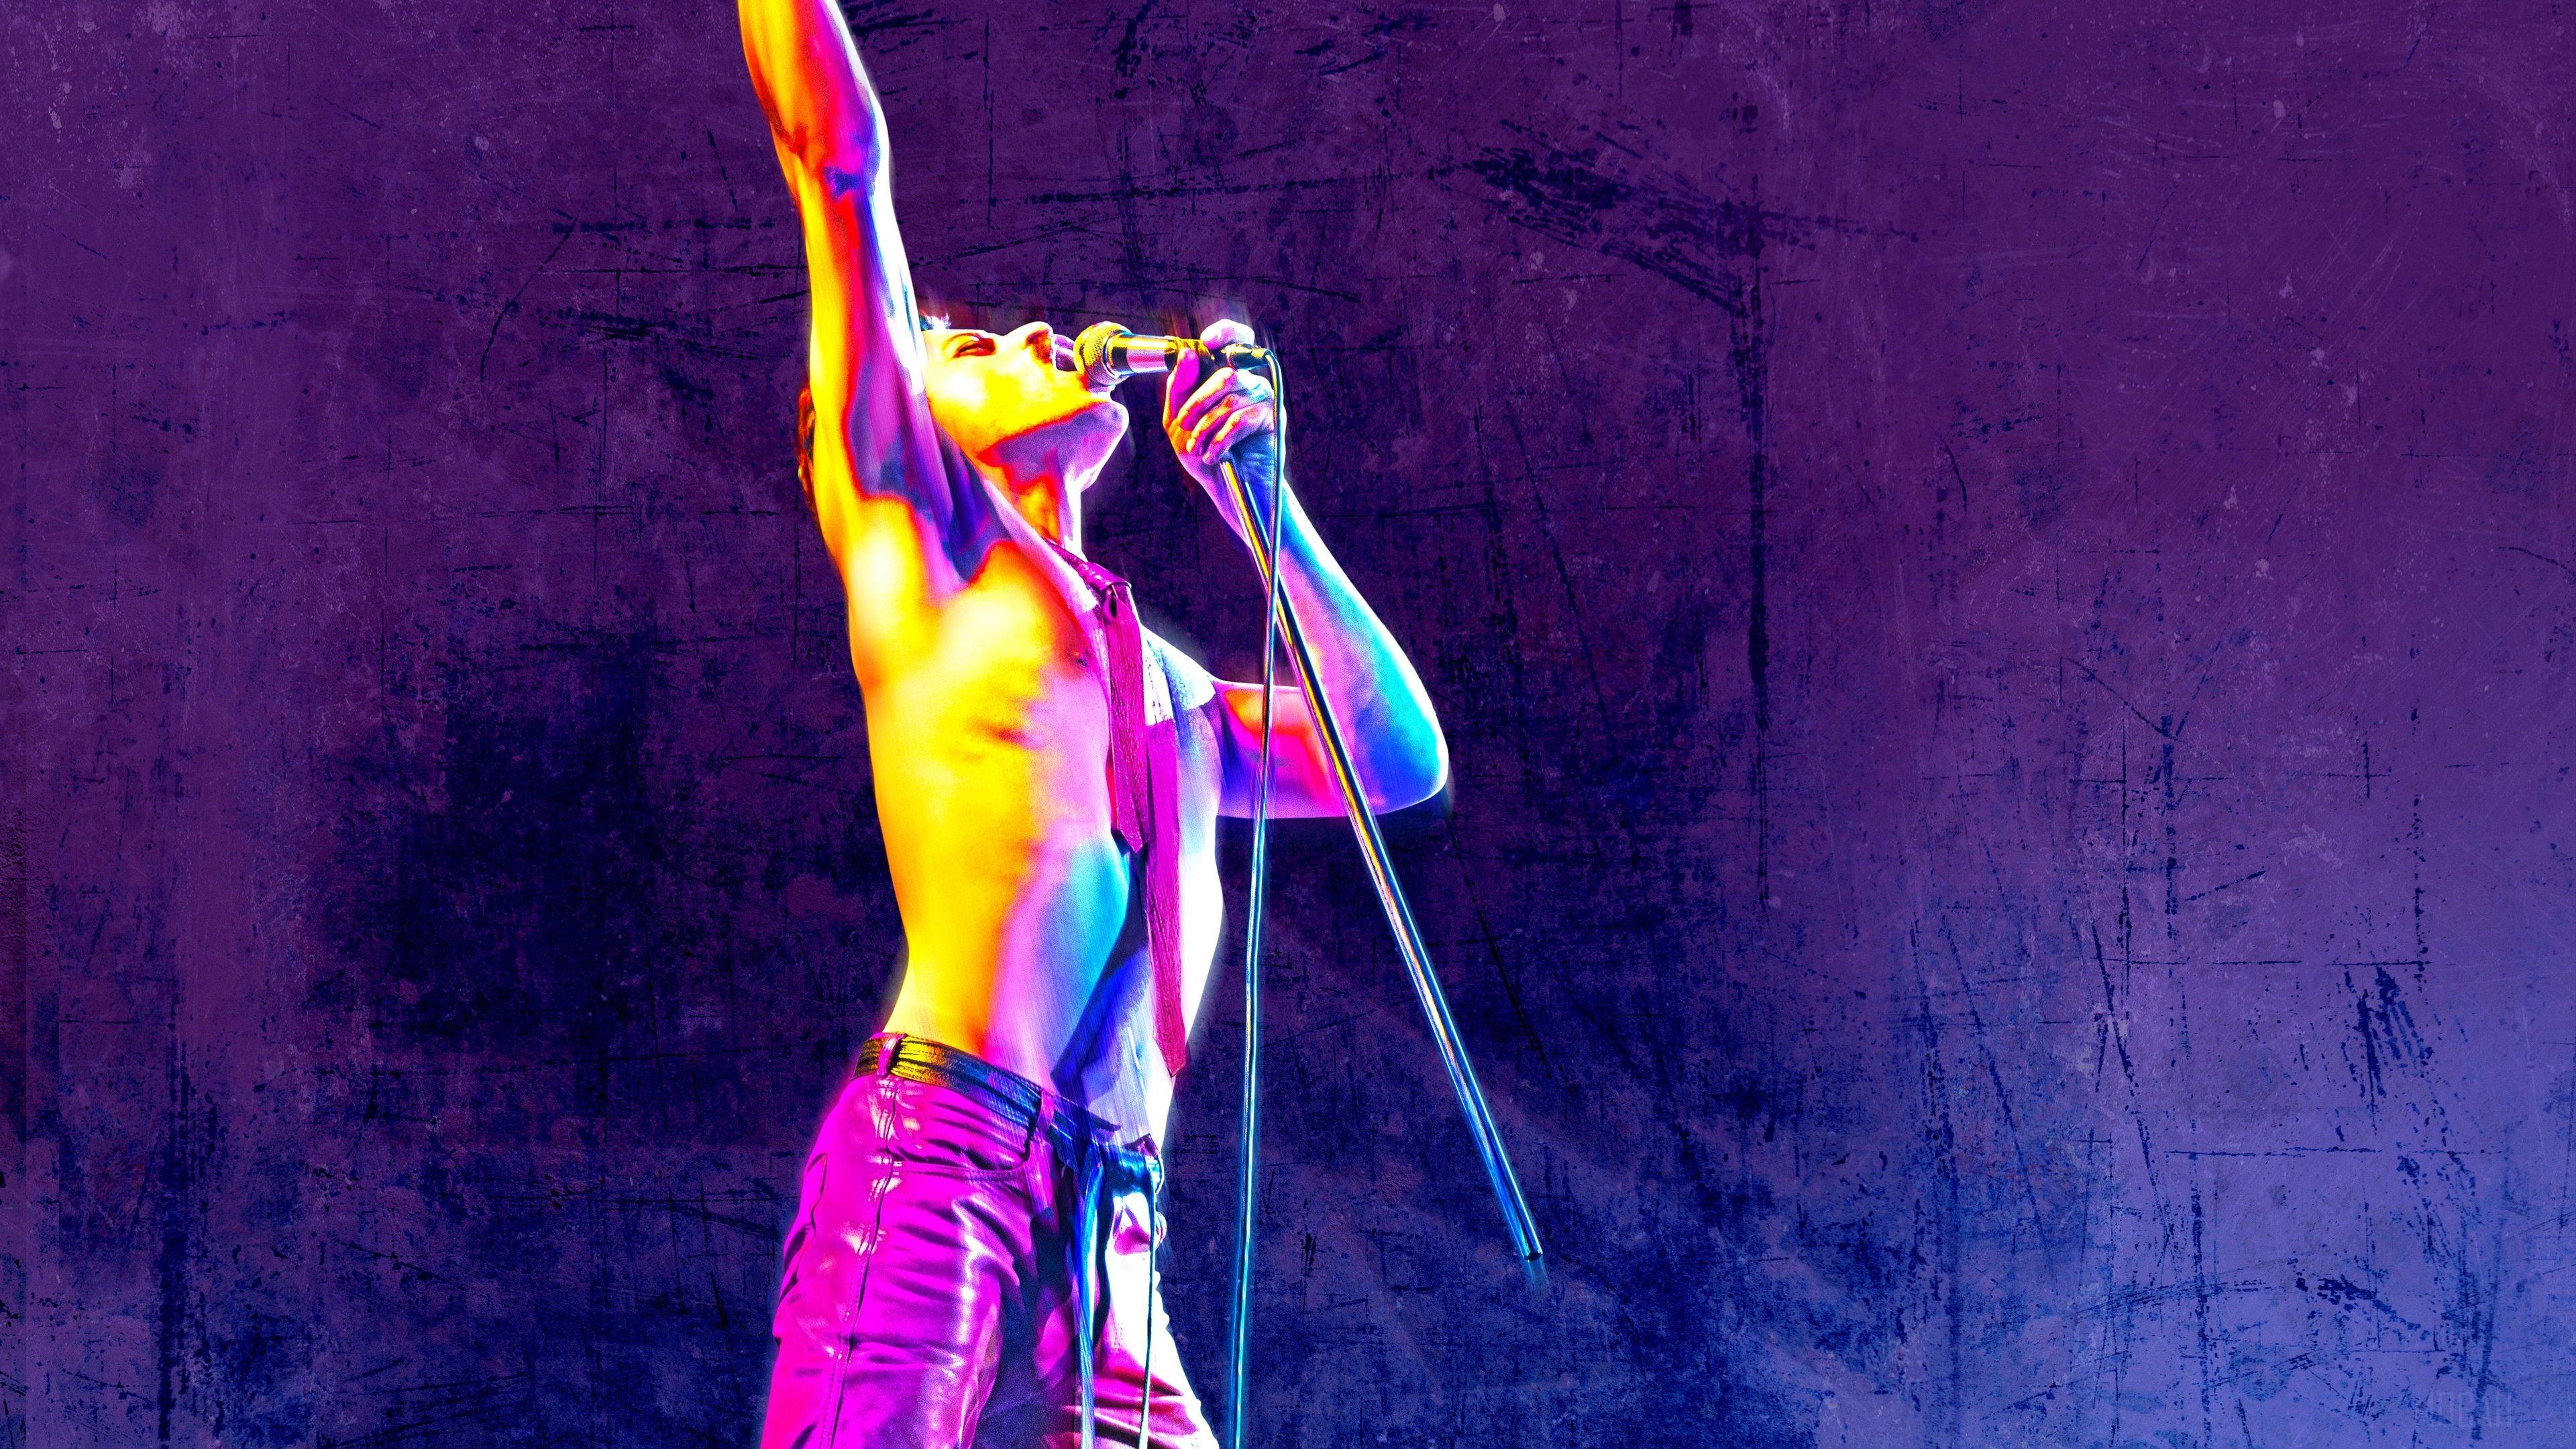 HD wallpaper, Bohemian Rhapsody 4K